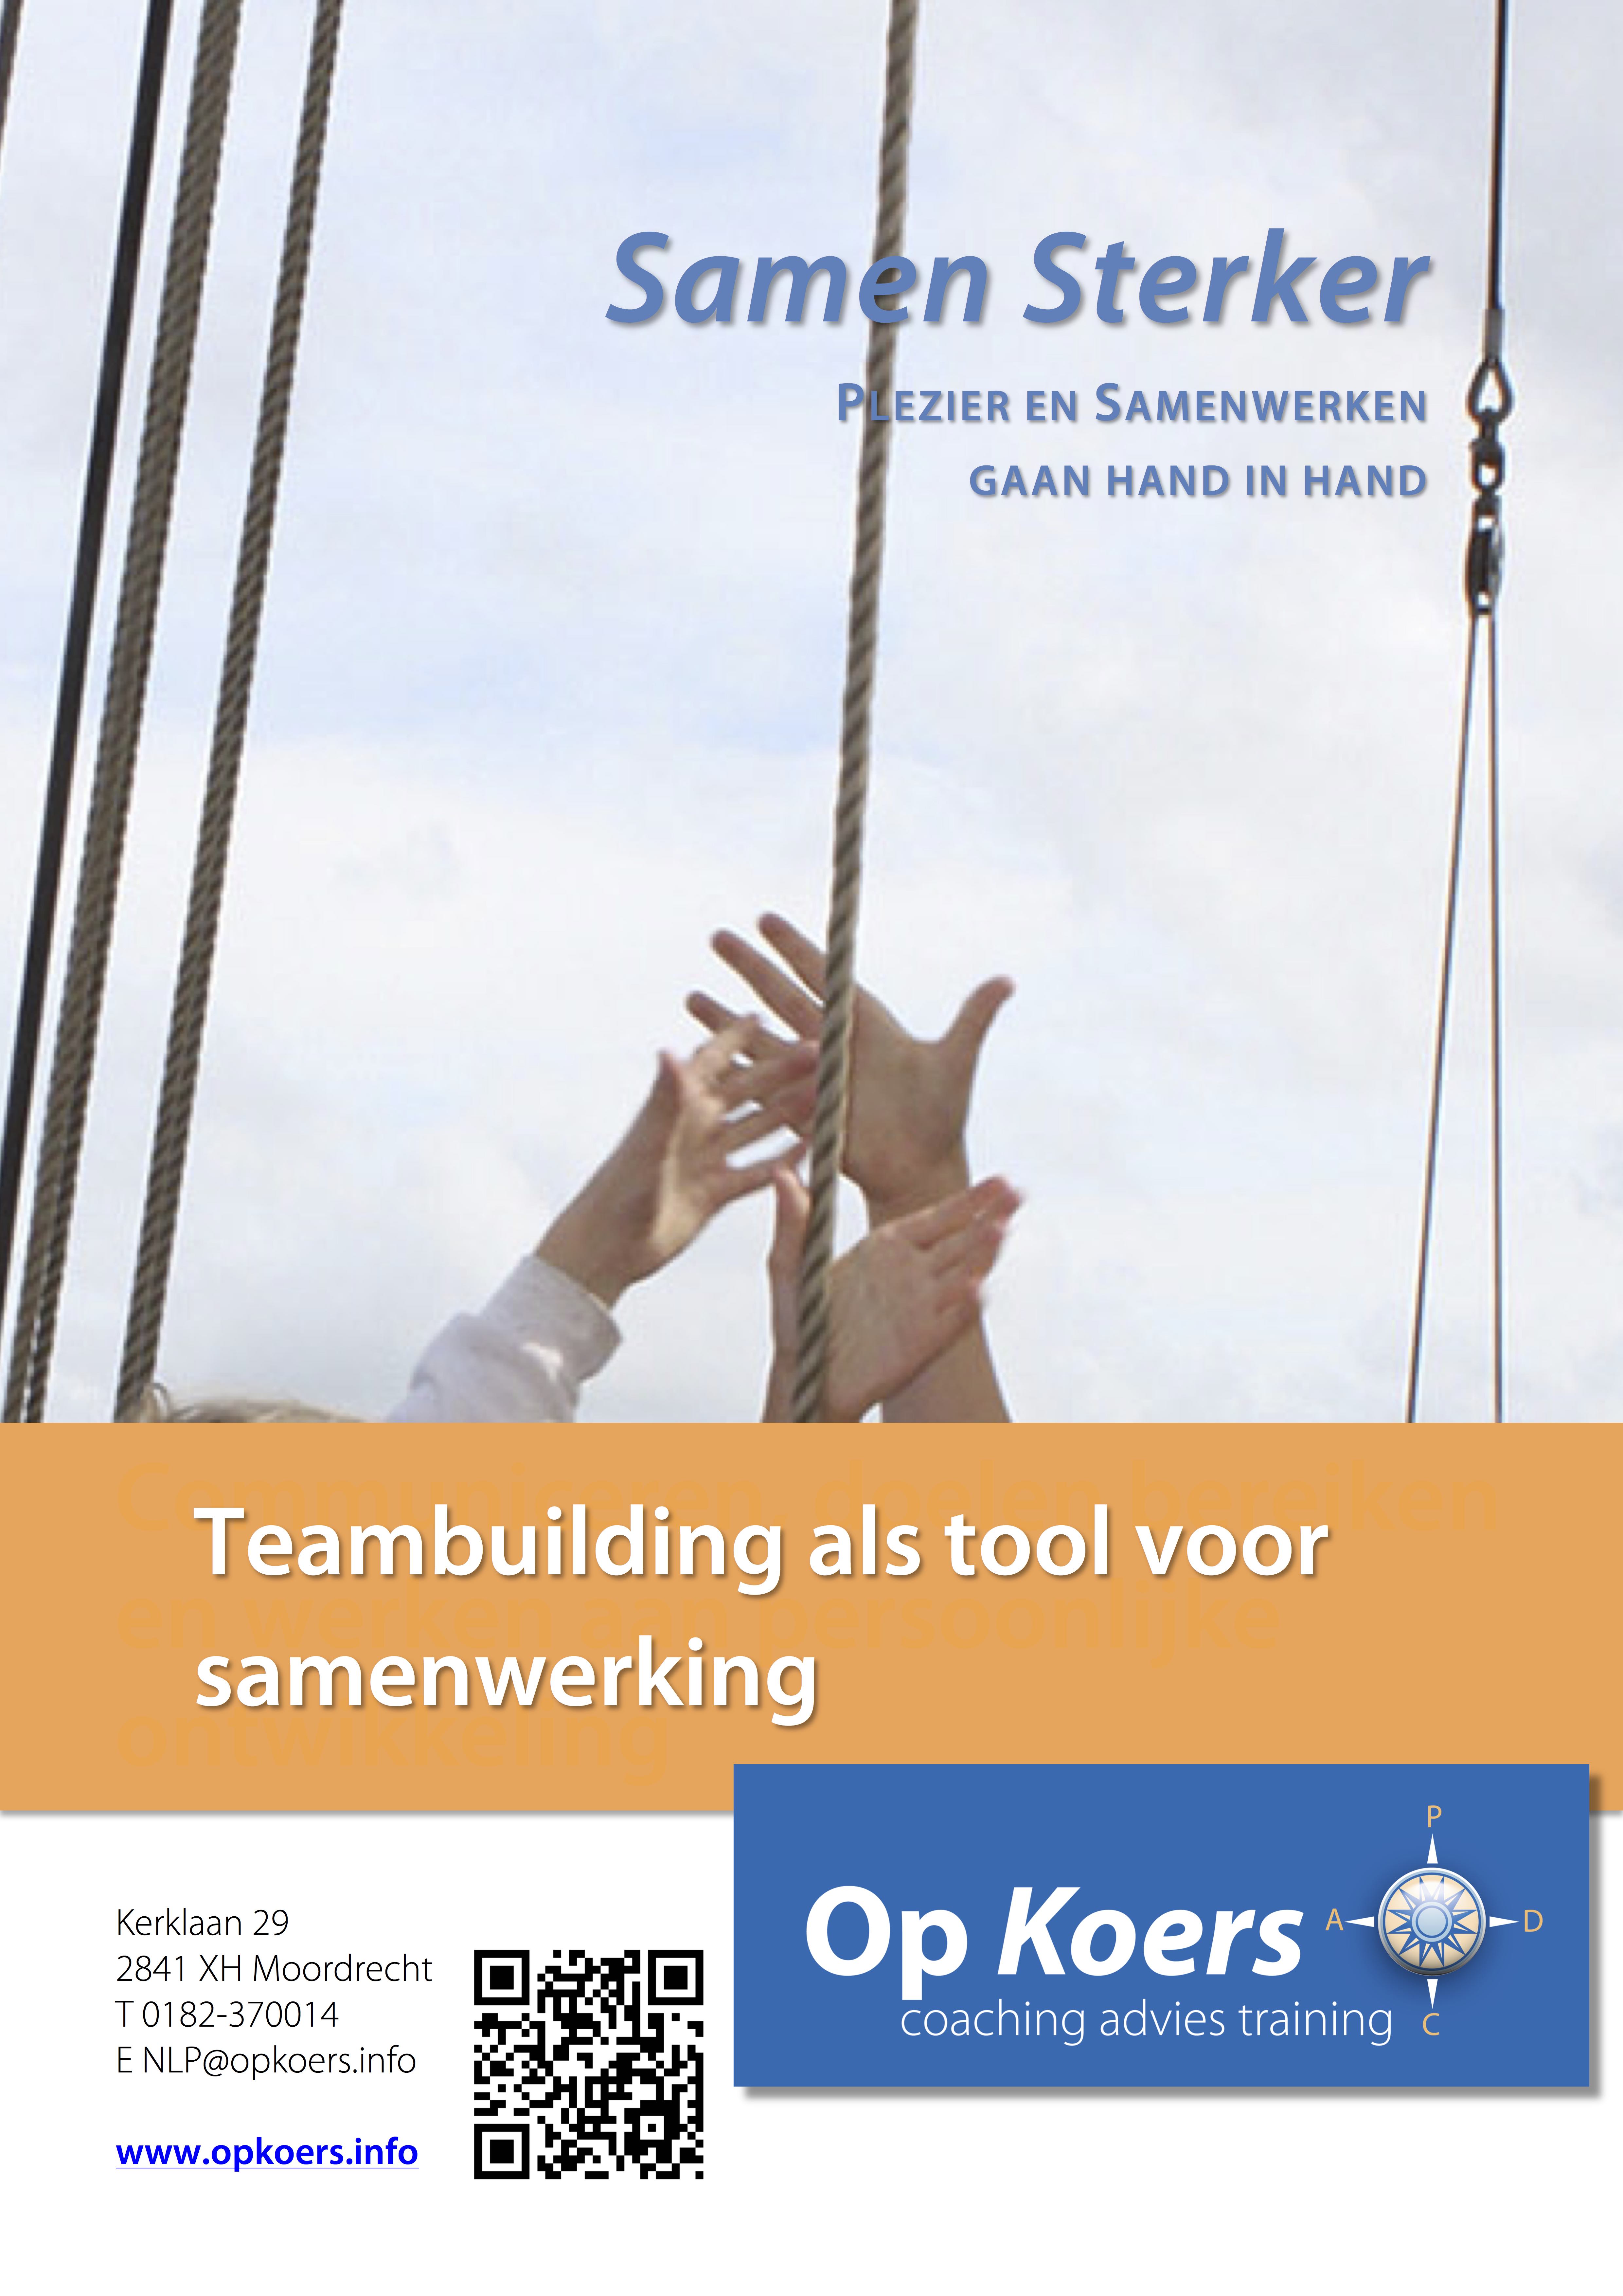 Teambuilding en samenwerking, de training / workshop Samen Sterker, waarbij plezier en samenwerken hand in hand gaan.